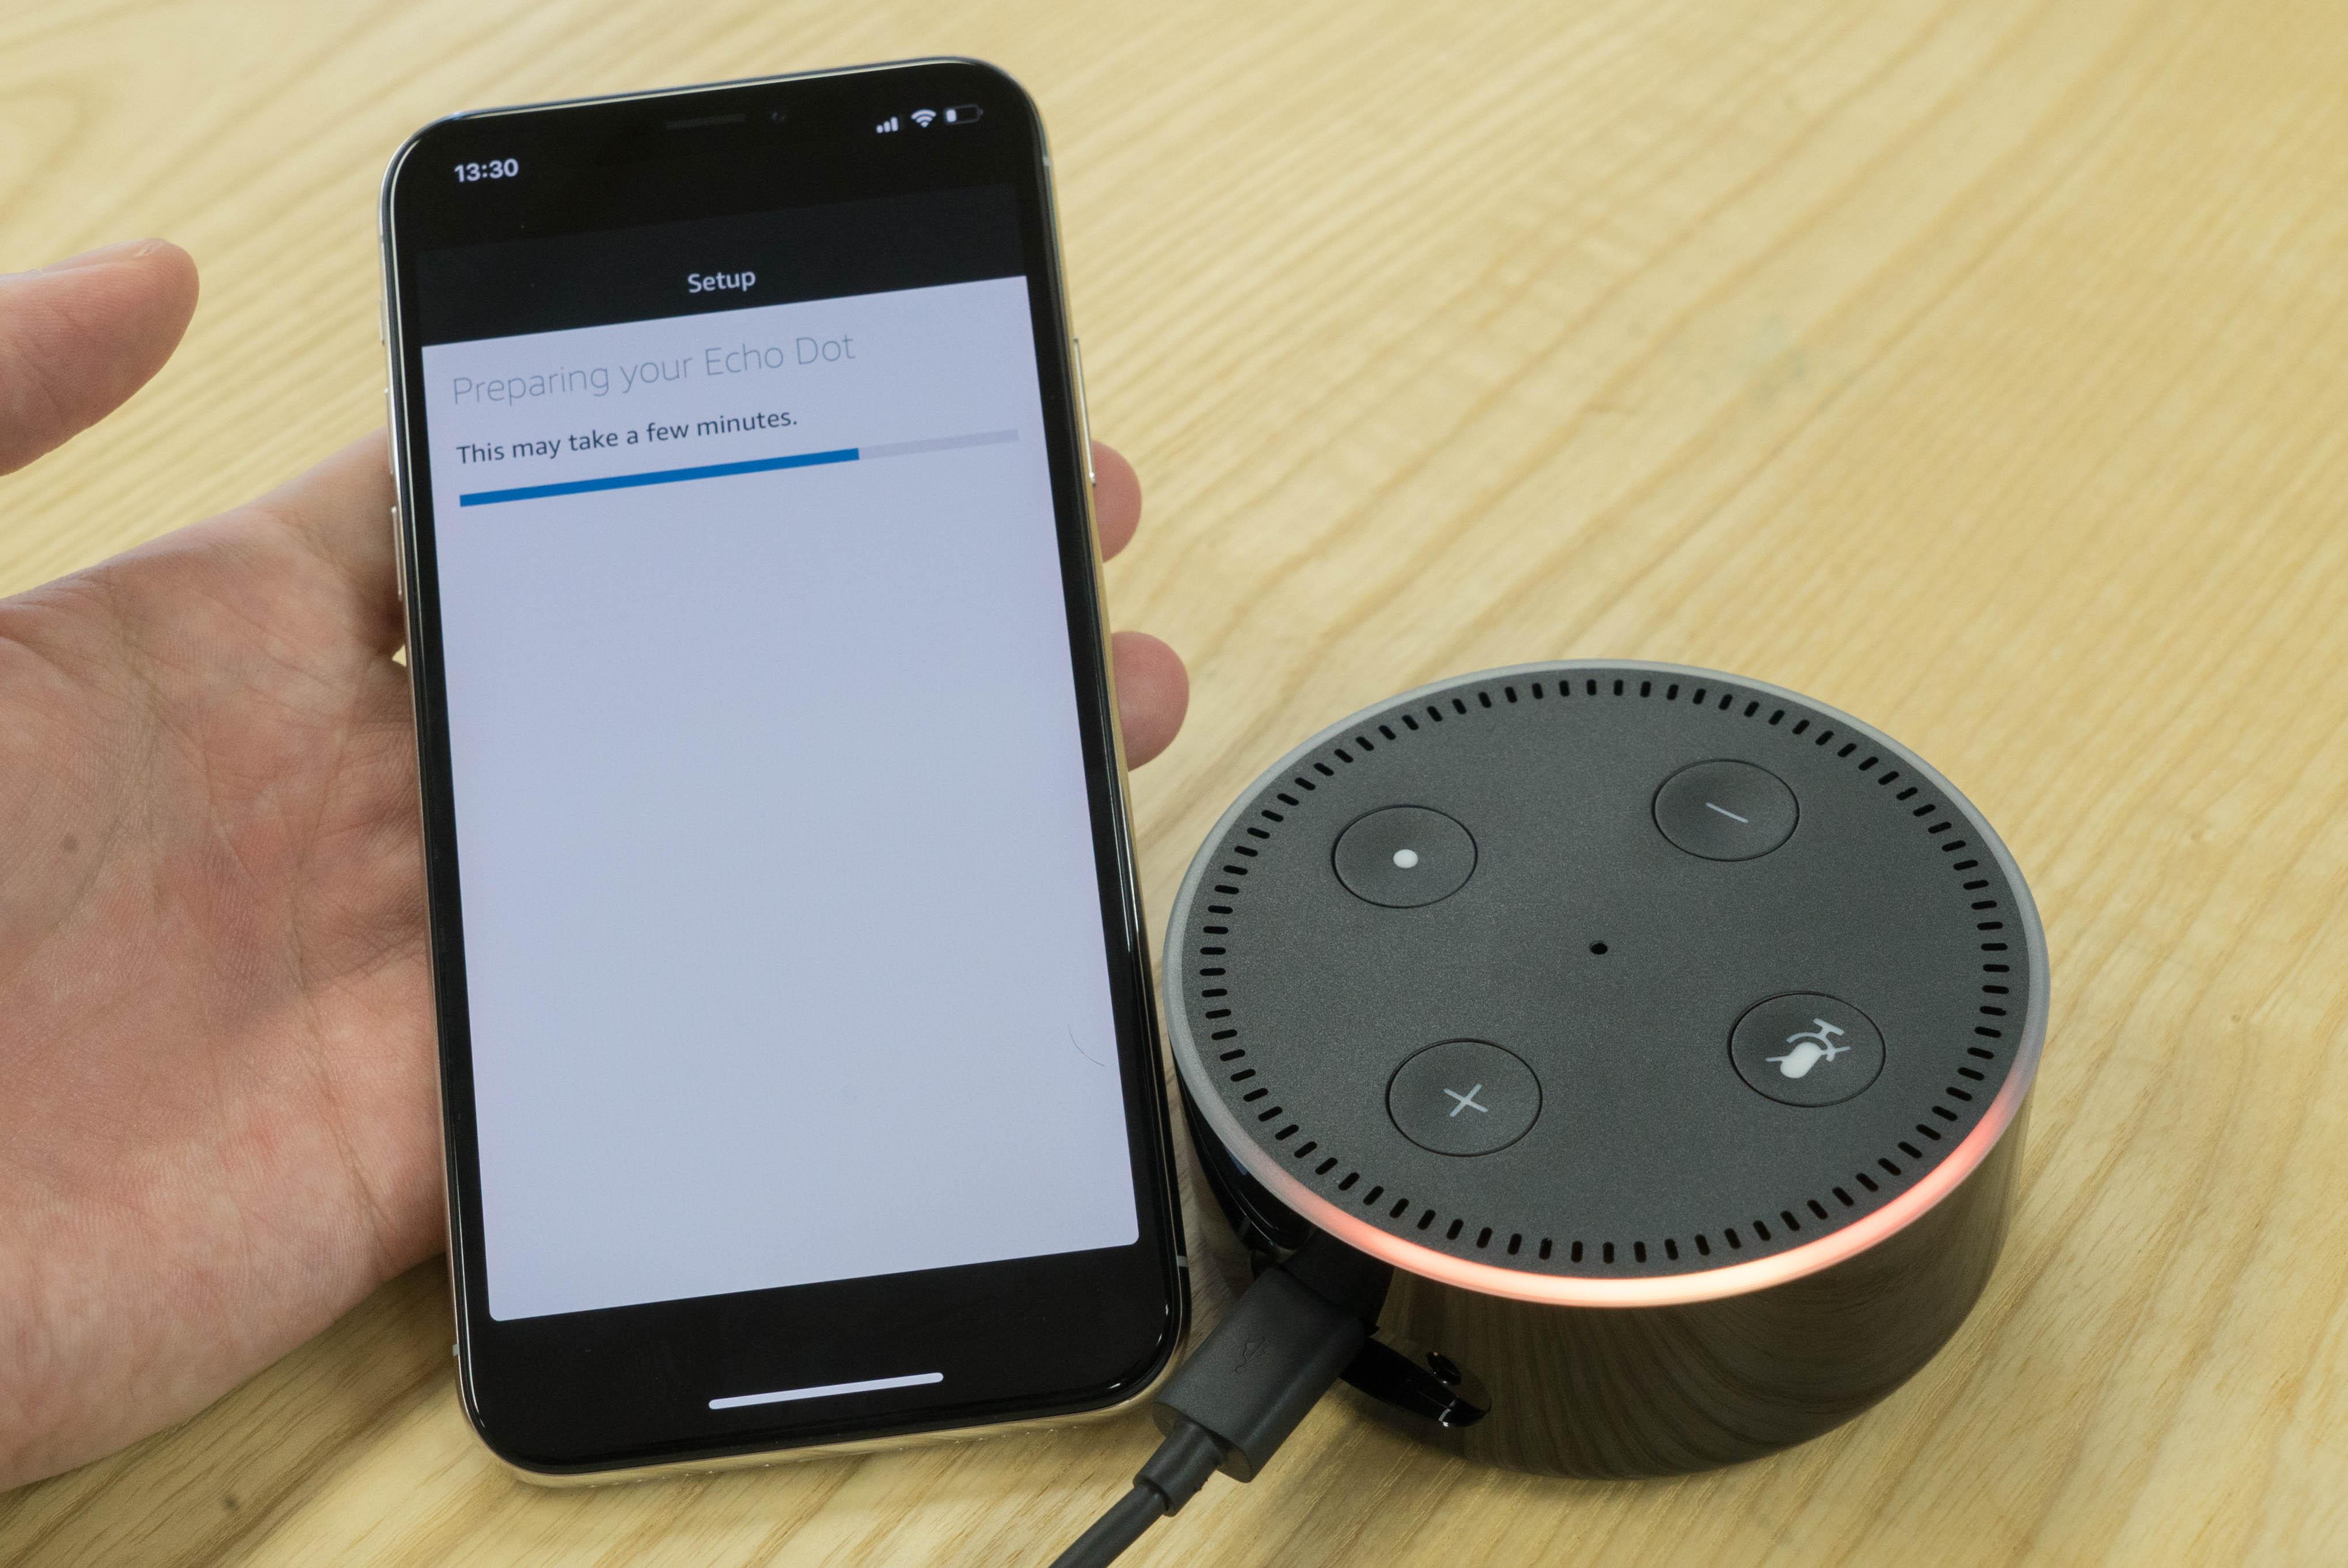 Amazon Echo｣をセットアップする方法。必要なものはスマホ・電源・Wi